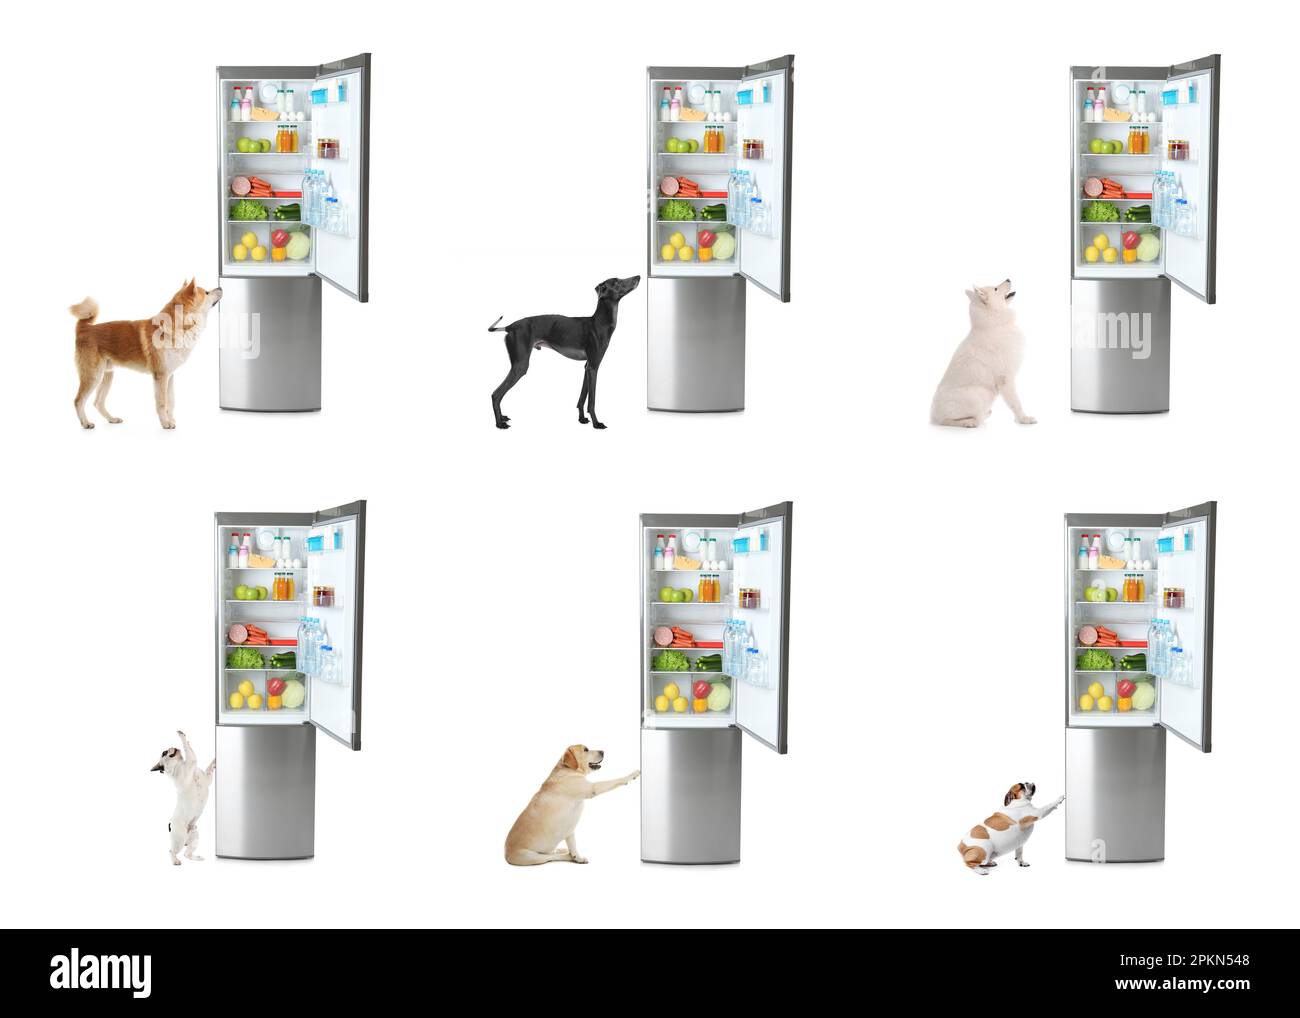 Chiens mignons près des réfrigérateurs ouverts sur fond blanc, collage Banque D'Images